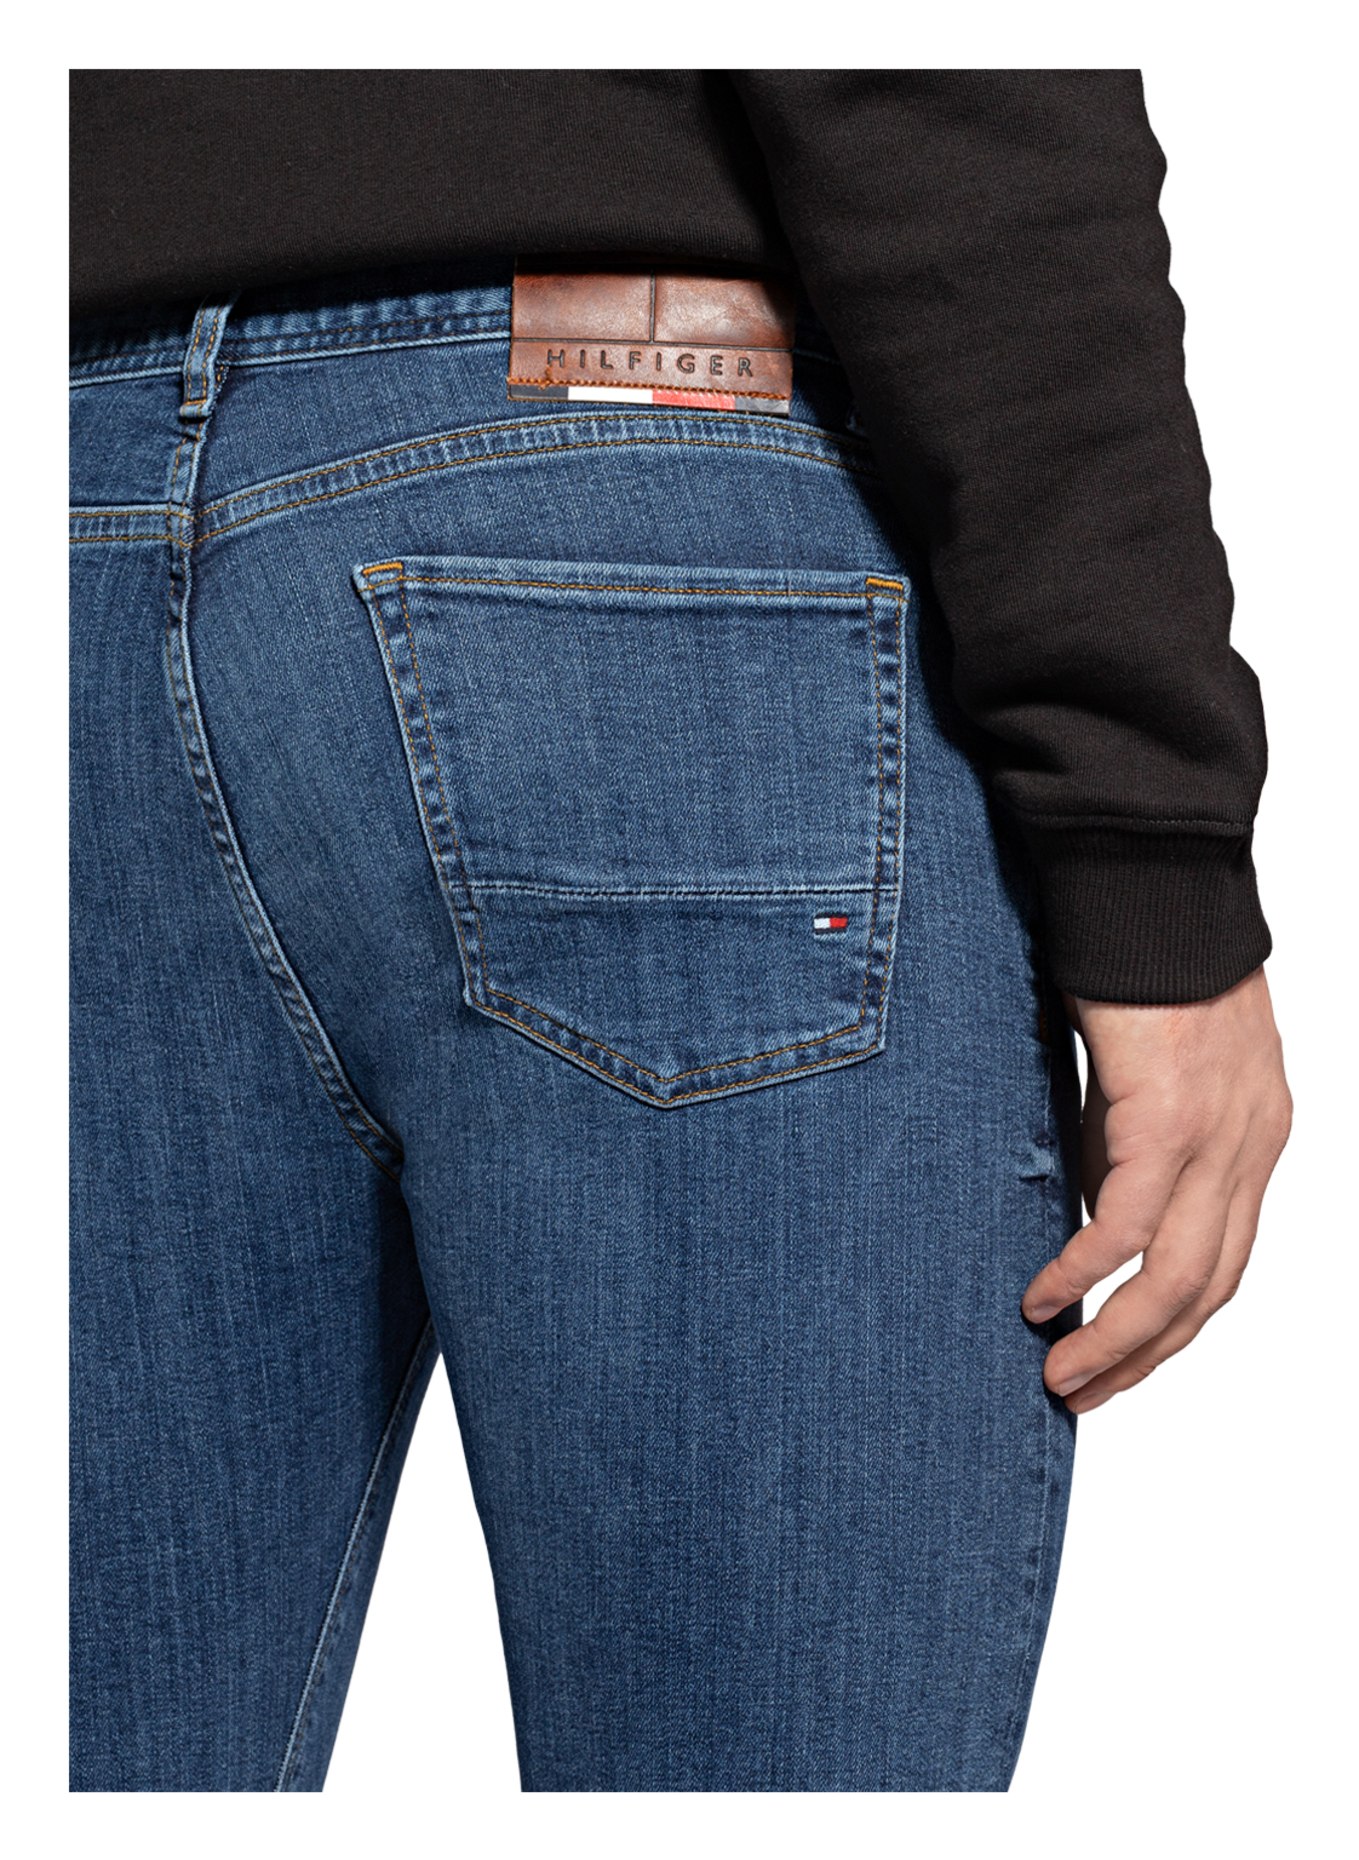 TOMMY HILFIGER Jeans BLEECKER Slim Fit, Farbe: 1C4 Oregon Indigo (Bild 7)